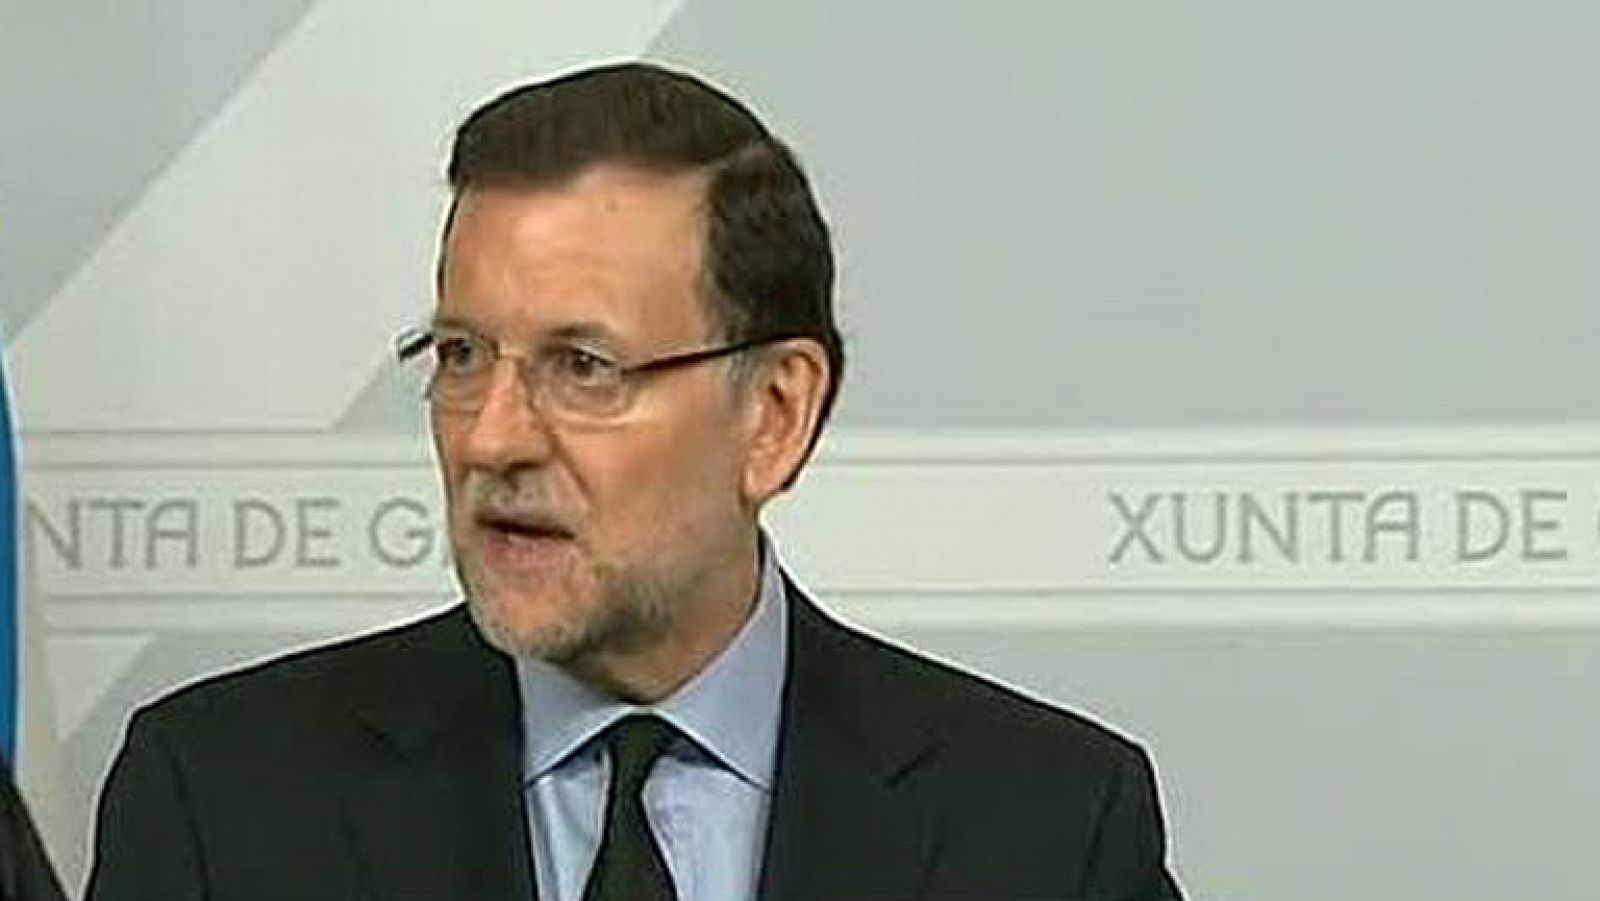  Rajoy confía en que se esclarezcan "a la mayor celeridad" las causas del accidente de tren